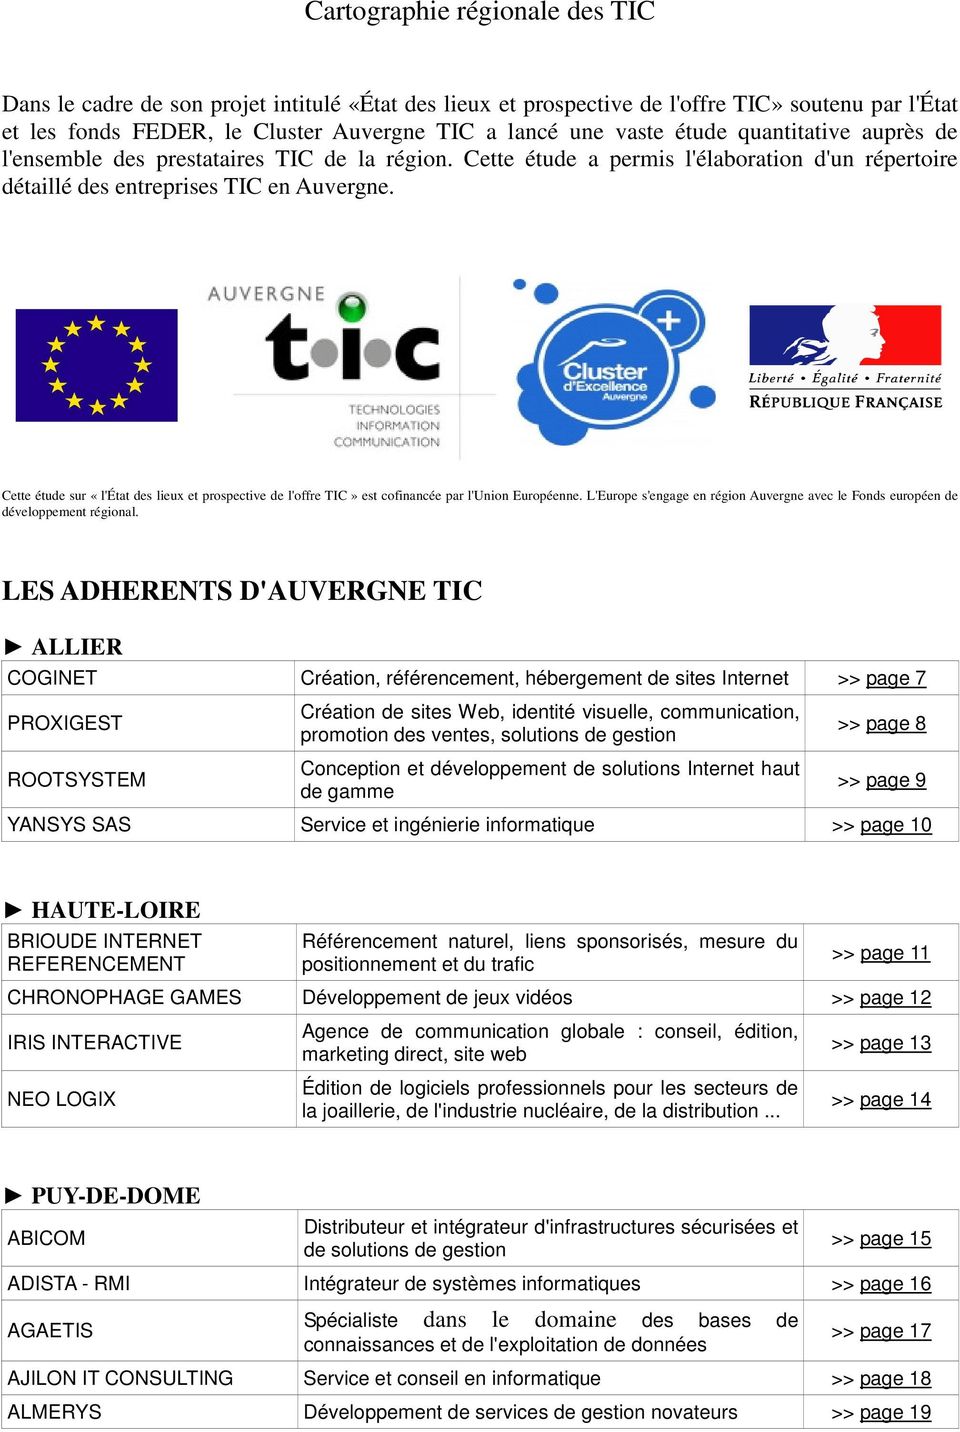 Cette étude sur «l'état des lieux et prospective de l'offre TIC» est cofinancée par l'union Européenne. L'Europe s'engage en région Auvergne avec le Fonds européen de développement régional.